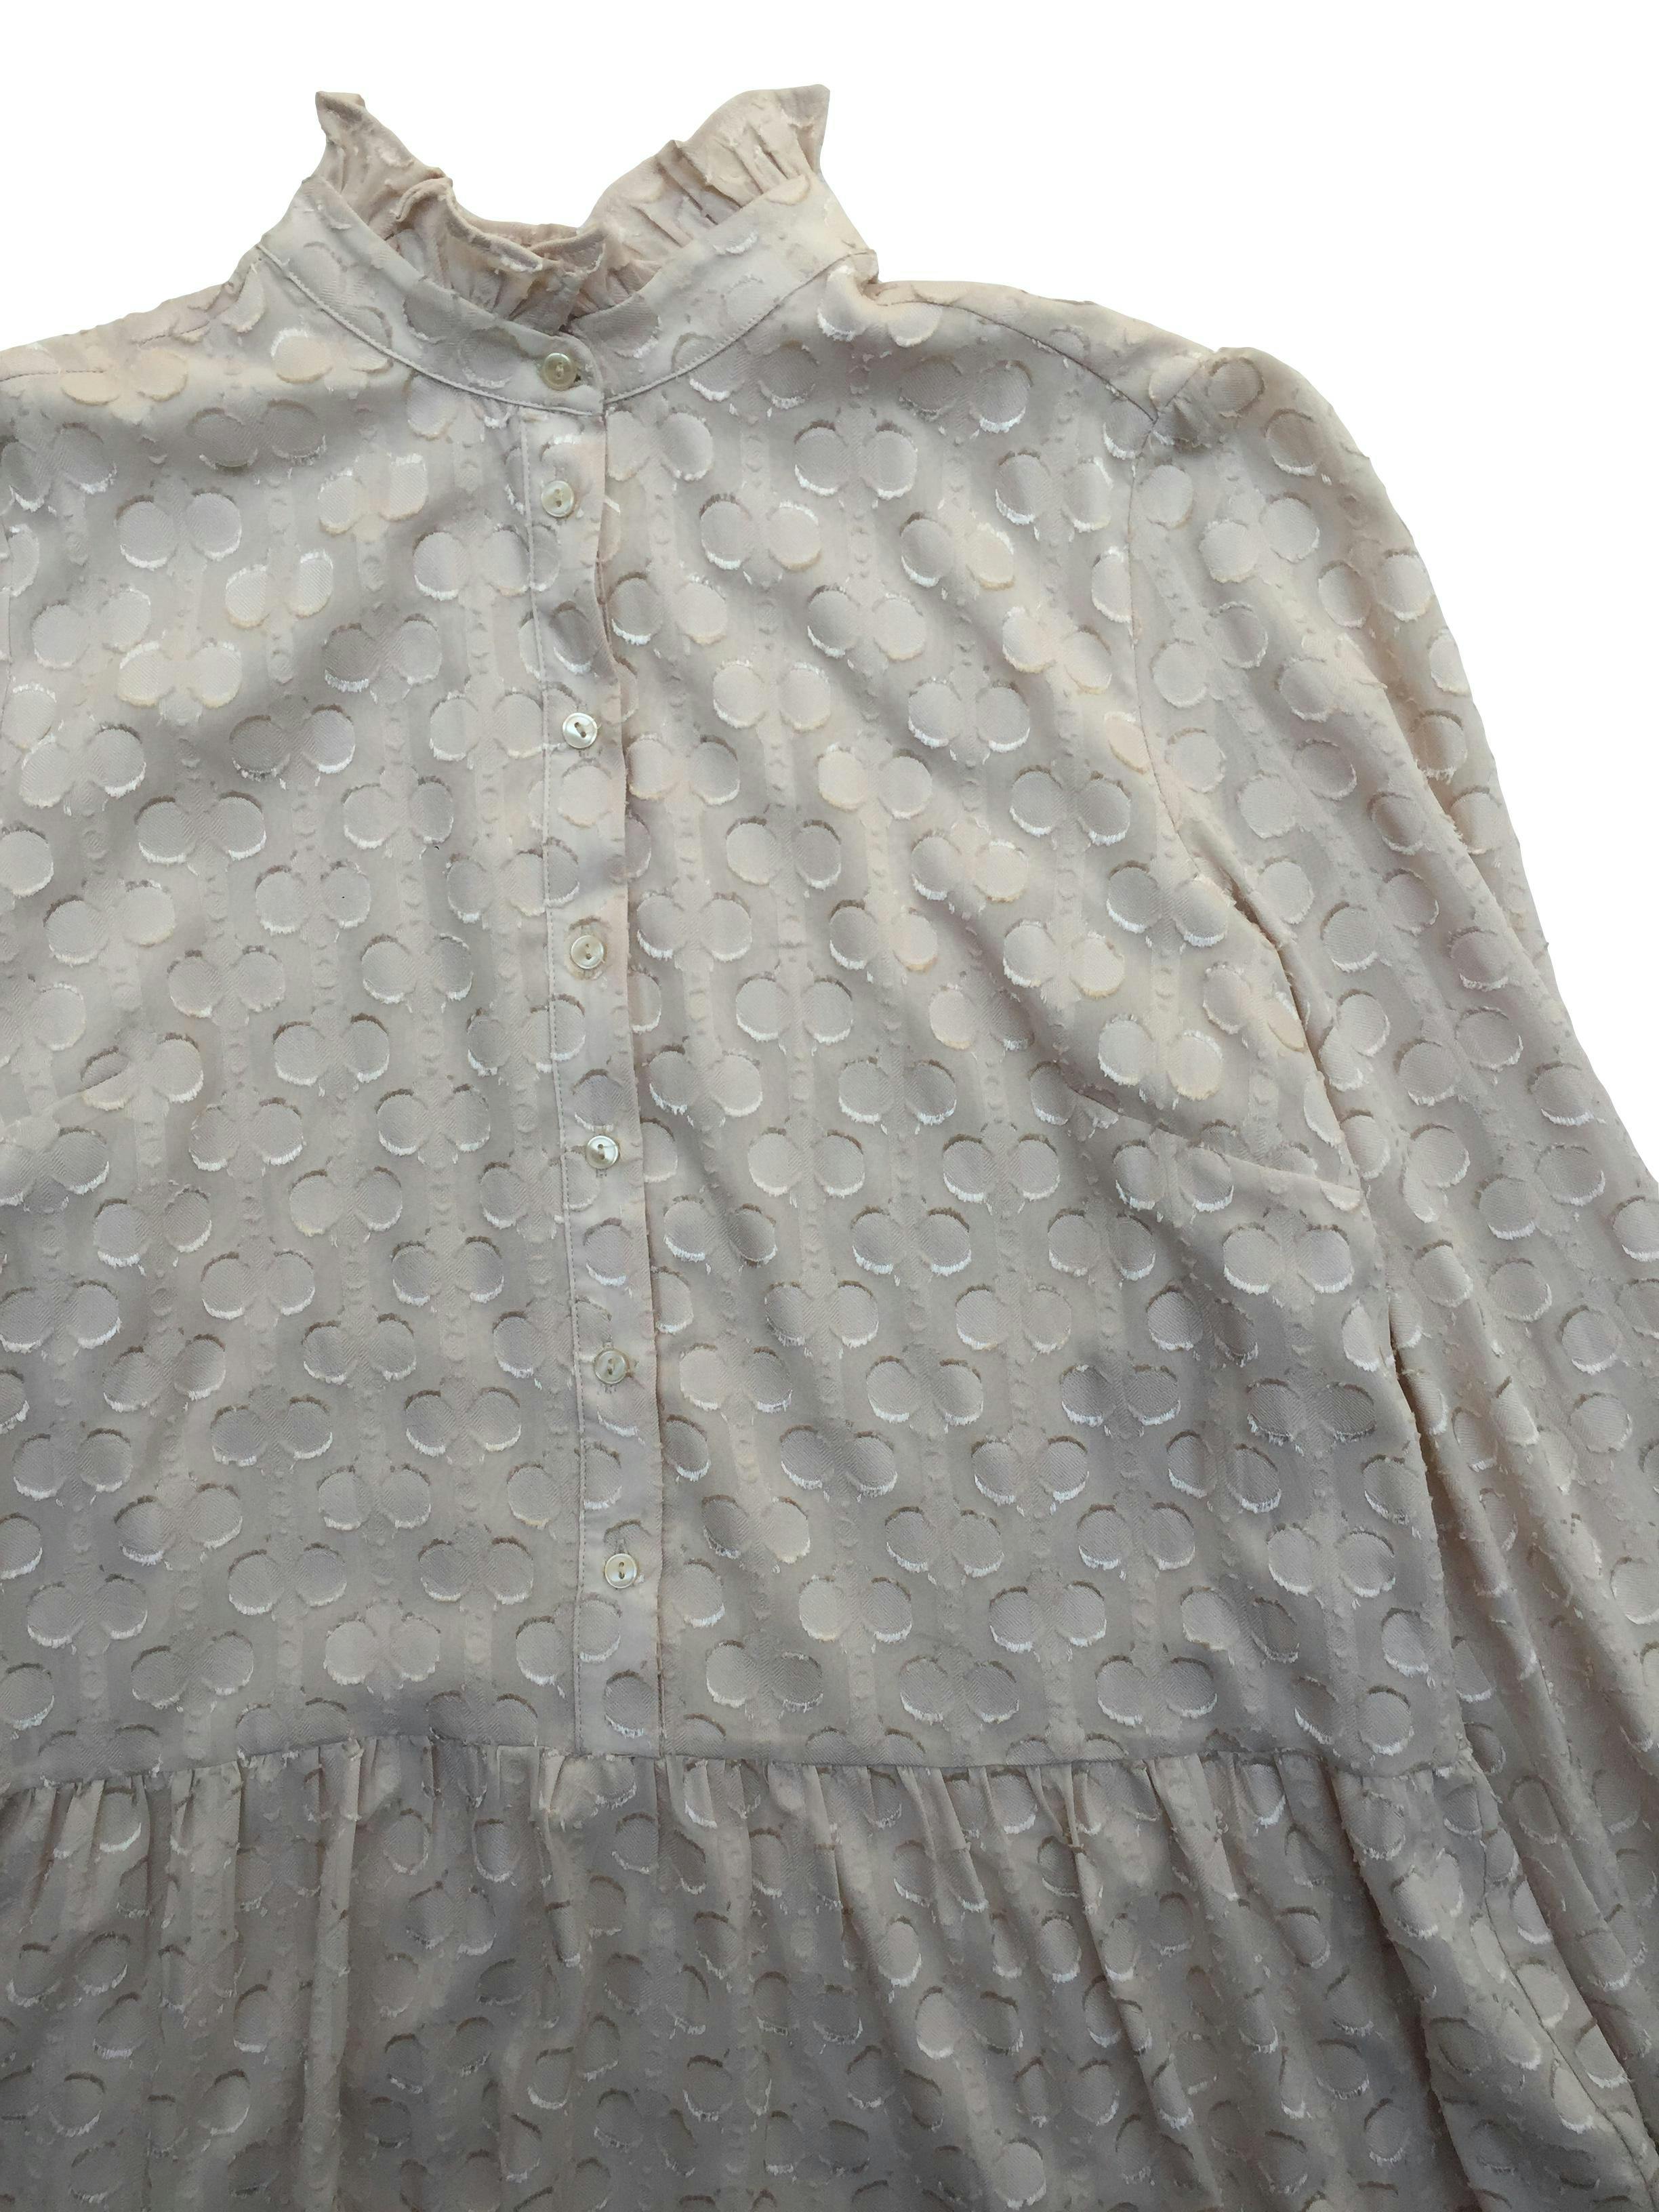 Vestido beige de gasa con textura en círculos, forrado, cuerpo en A. Busto 100cm Largo 85cm. Nuevo con etiqueta